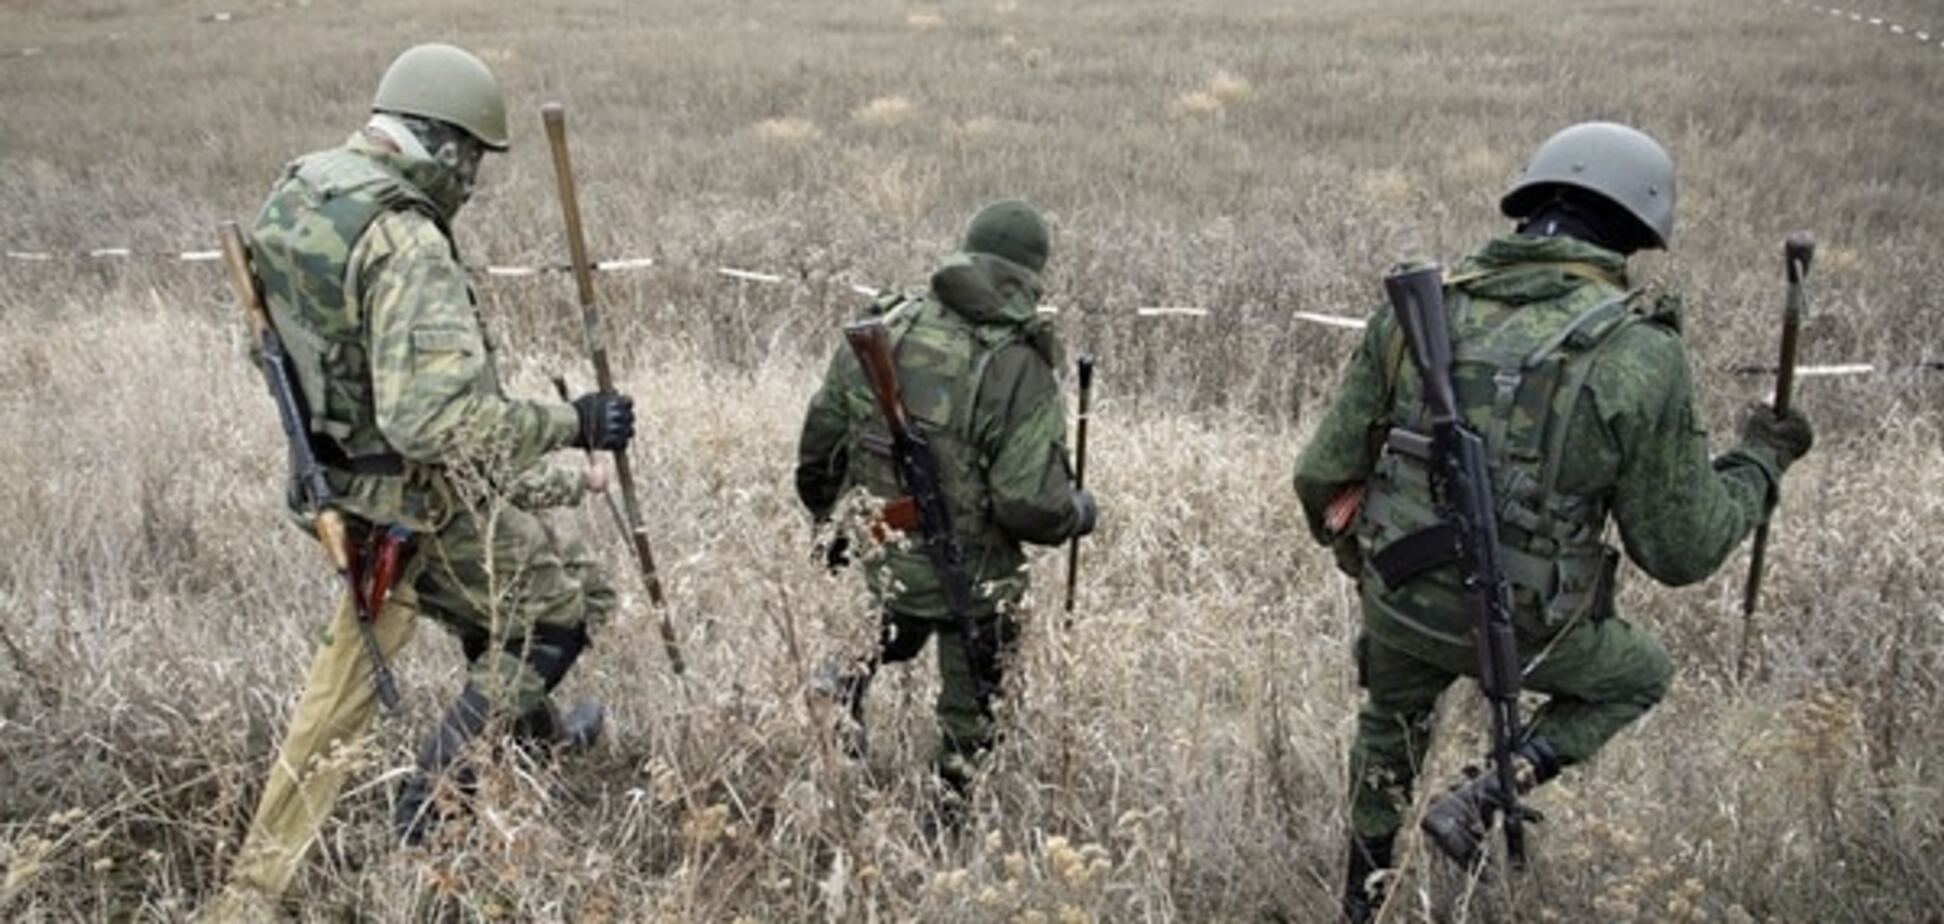 Терористи масово дезертують, в 'ДНР' створюють загороджувальні загони - розвідка